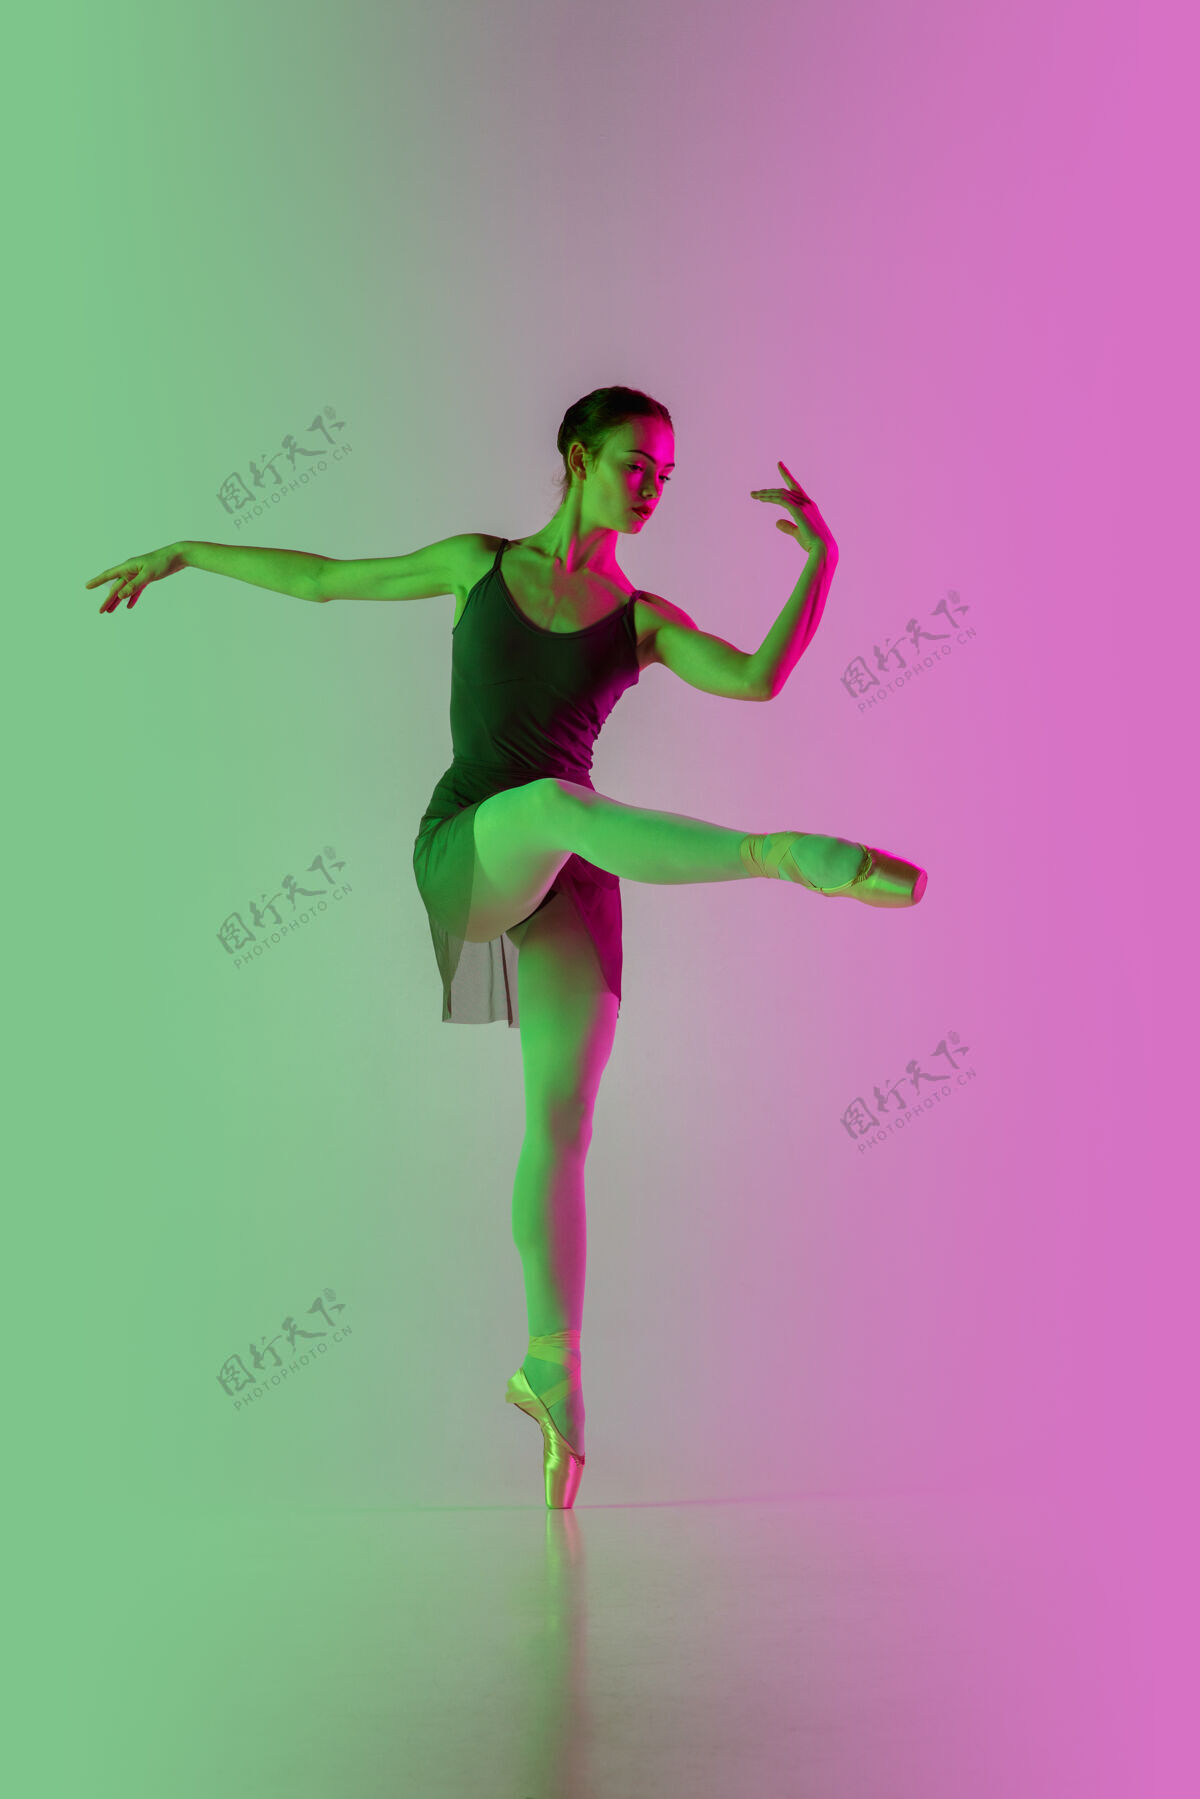 芭蕾轻年轻而优雅的芭蕾舞演员在霓虹灯下被隔离在渐变的粉绿色墙壁上艺术 动作 动作 灵活性 灵感概念灵活的芭蕾舞演员 失重跳跃女人动作优雅